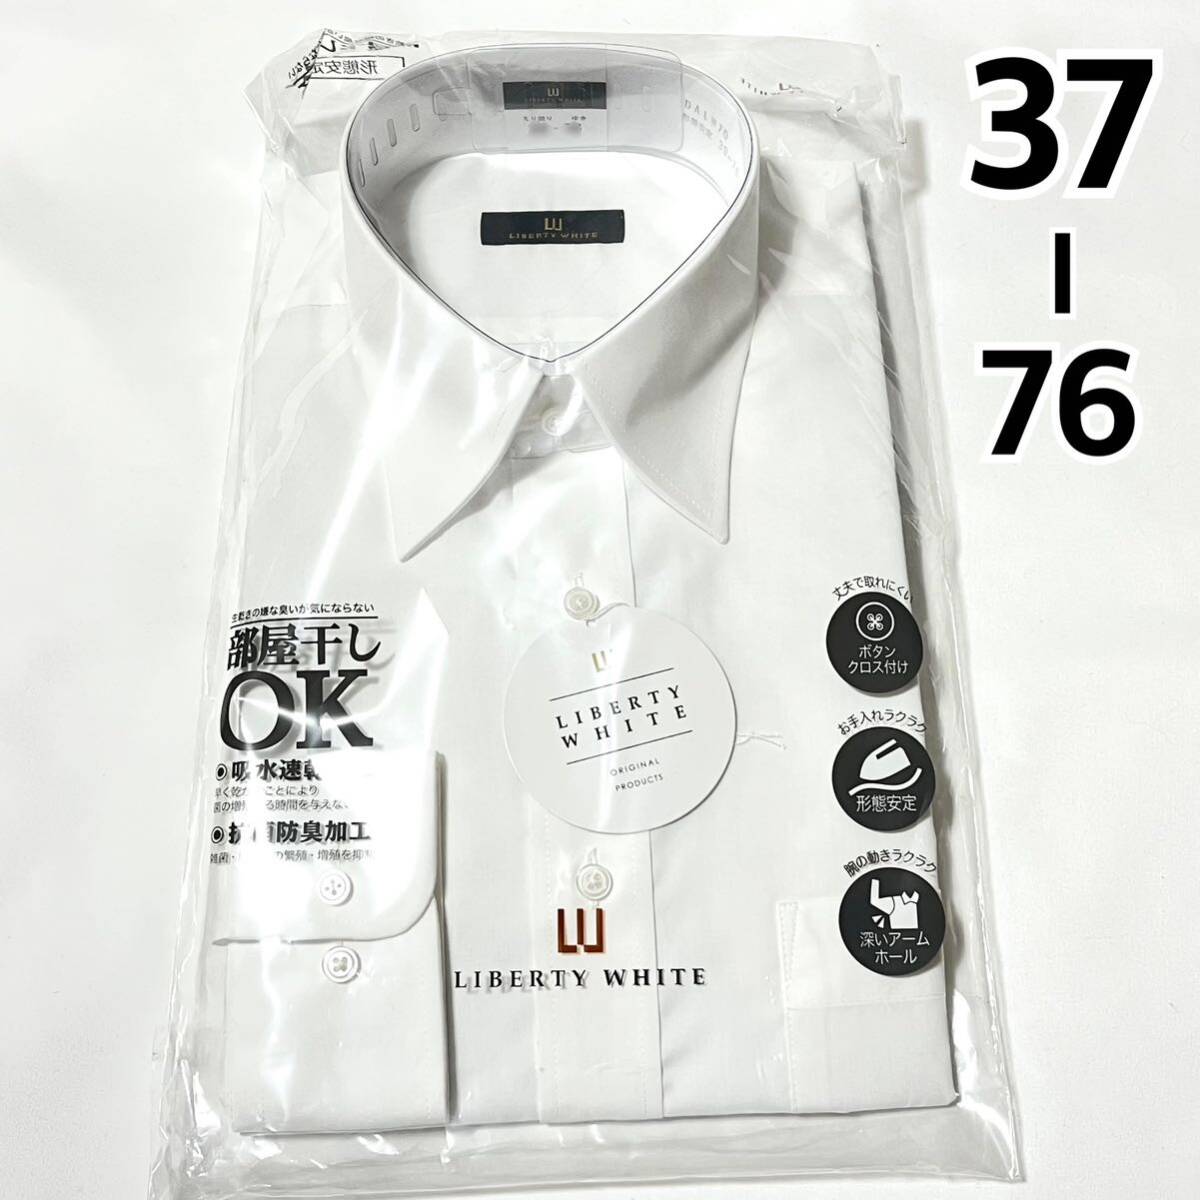 【新品】メンズ 長袖 ワイシャツ【527】形態安定 抗菌防臭 吸水速乾 Yシャツ ホワイト 白 37 76_画像1